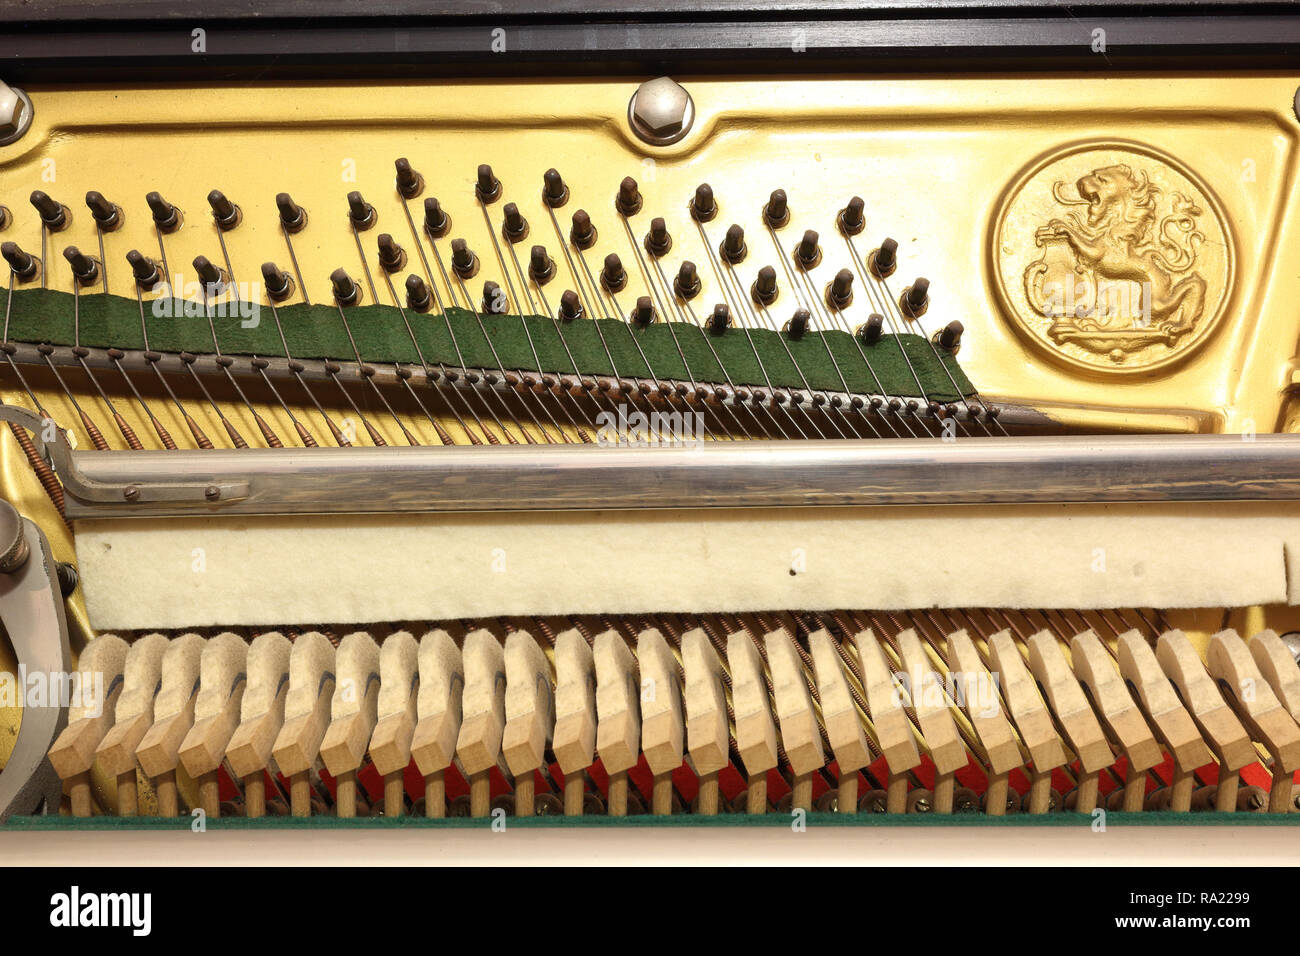 Il meccanico di un pianoforte verticale, con i perni di attacco, stringhe  oltre il ponte, panno